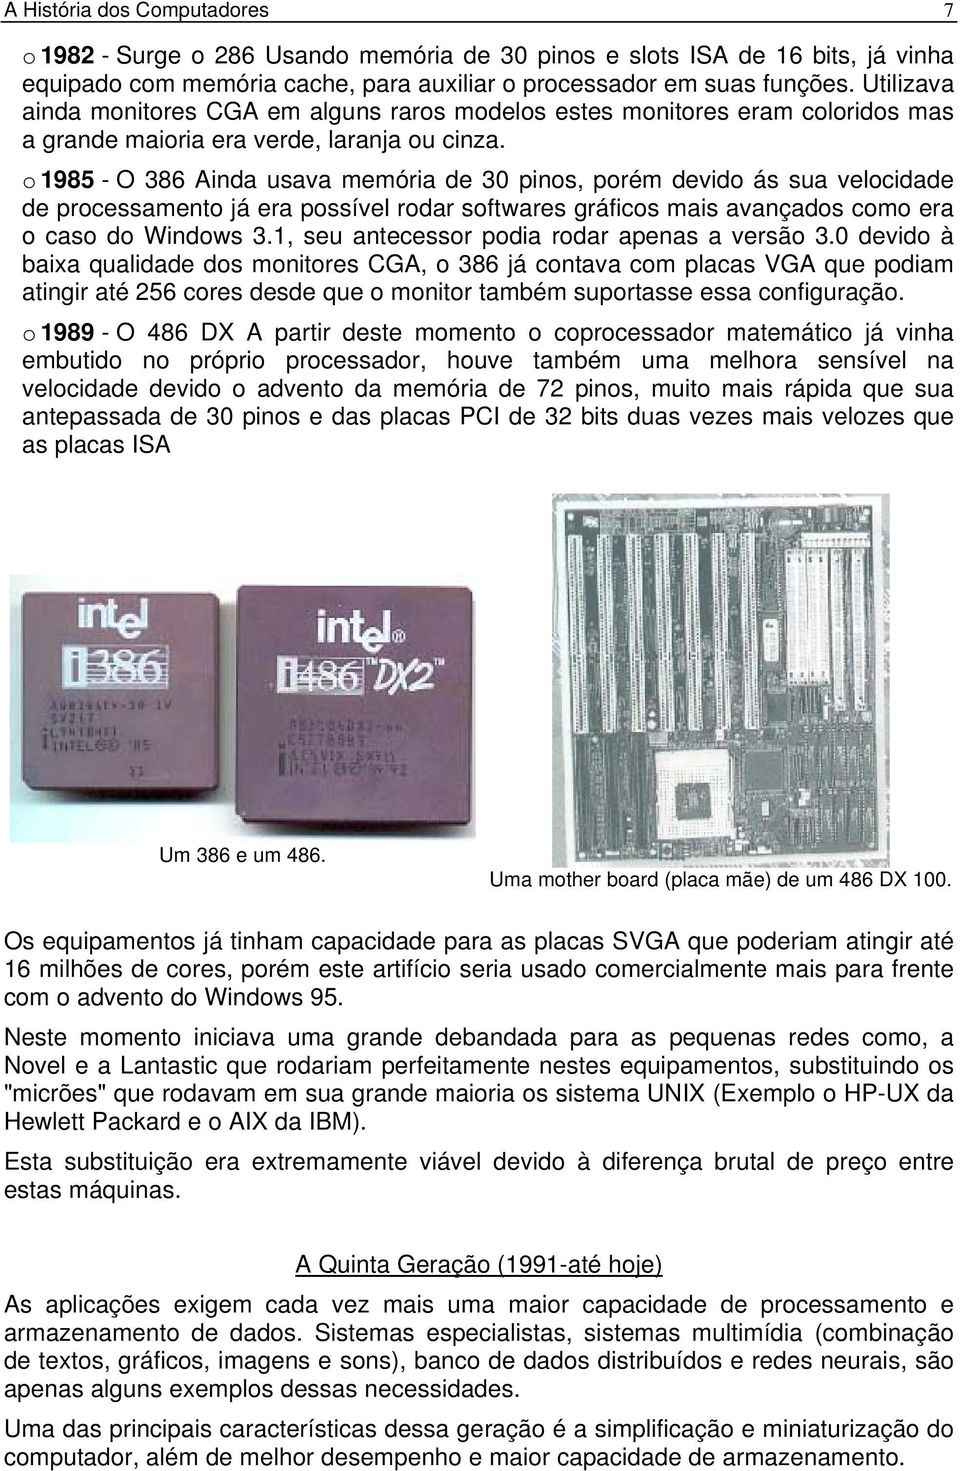 o 1985 - O 386 Ainda usava memória de 30 pinos, porém devido ás sua velocidade de processamento já era possível rodar softwares gráficos mais avançados como era o caso do Windows 3.